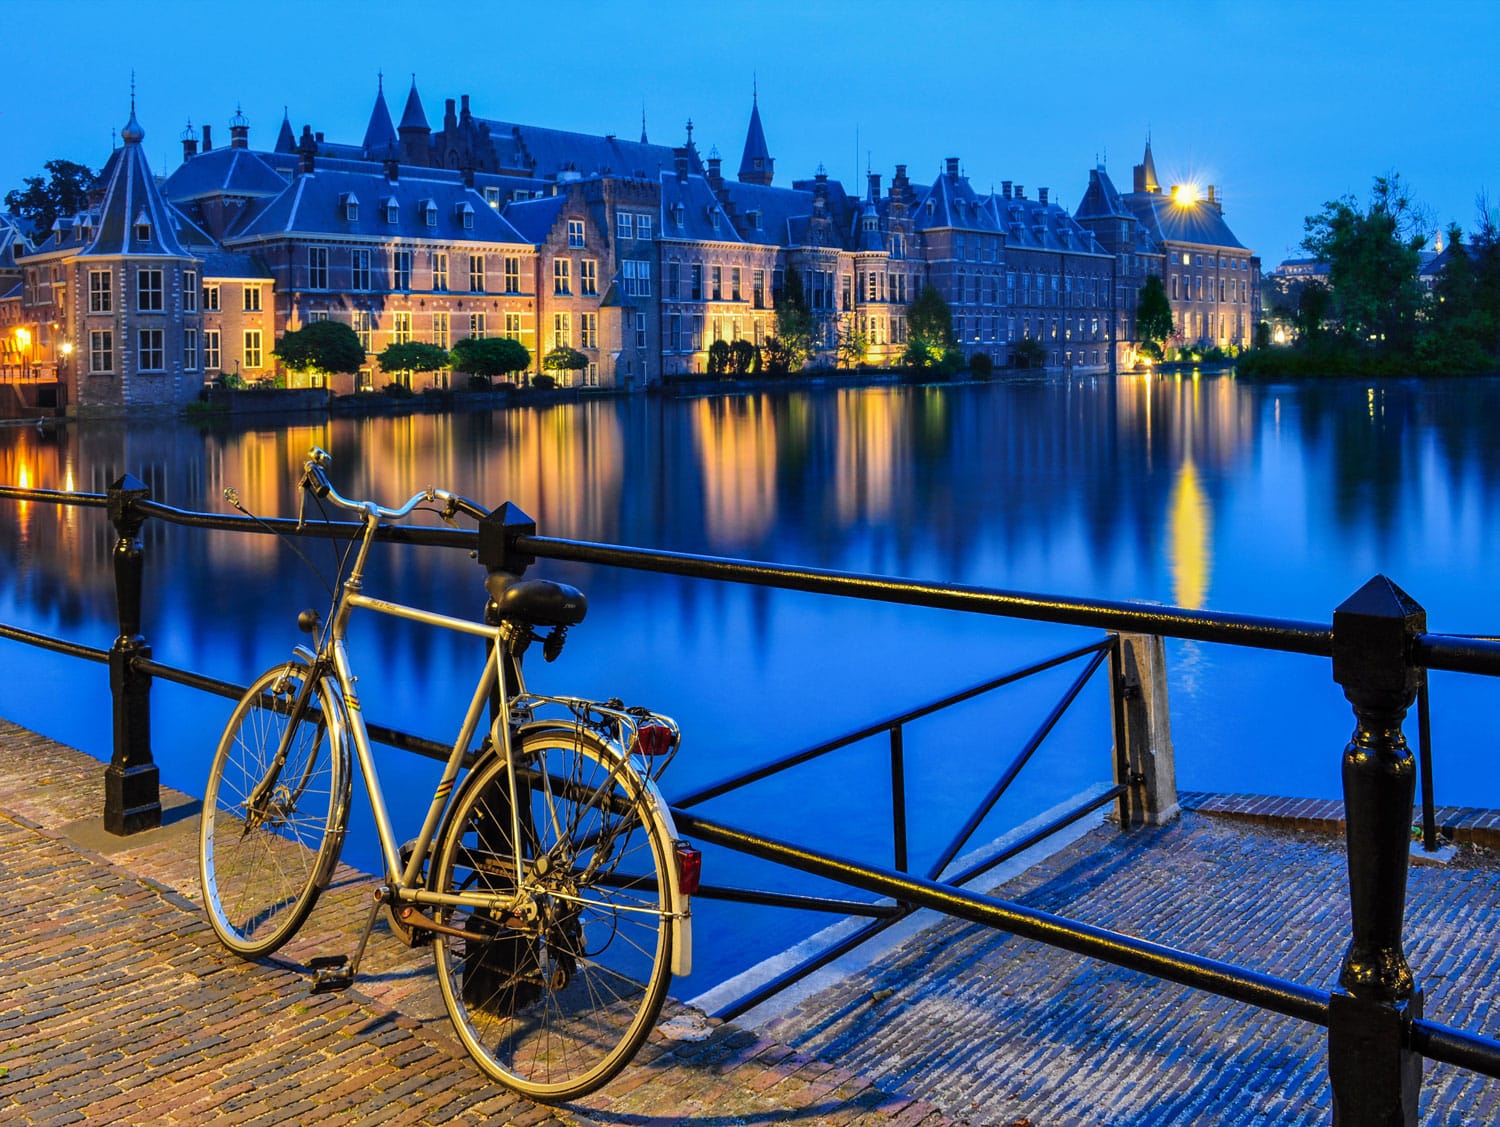 Ποδήλατο σε ένα κανάλι στη Χάγη, κοντά στο Binnenhof